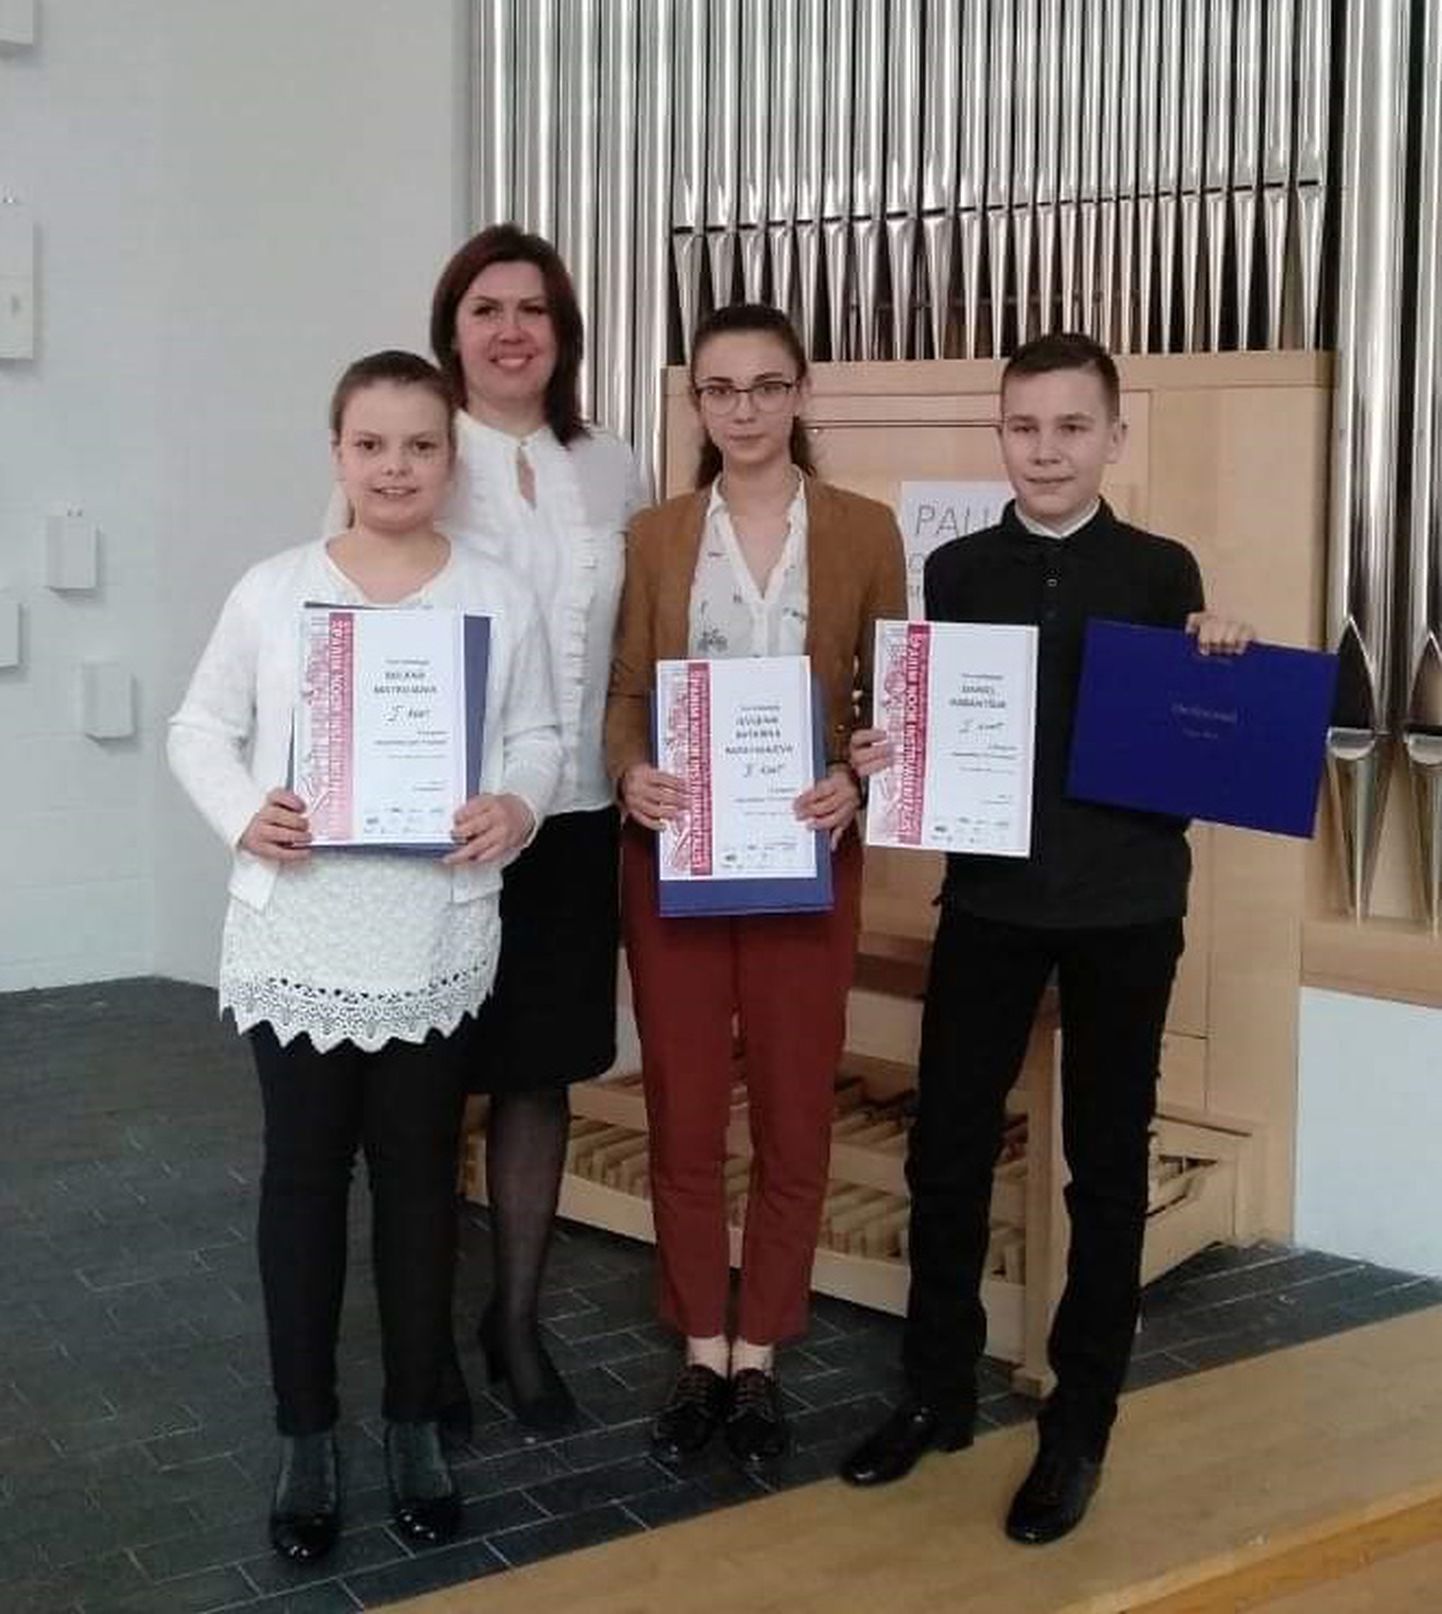 Svetlana Kekiševa ning tema õpilased Milana Matrossova, Daniel Kabantšuk ja Jevgenia-Katarina Razgonjajeva järjekordse võidu üle rõõmustamas.